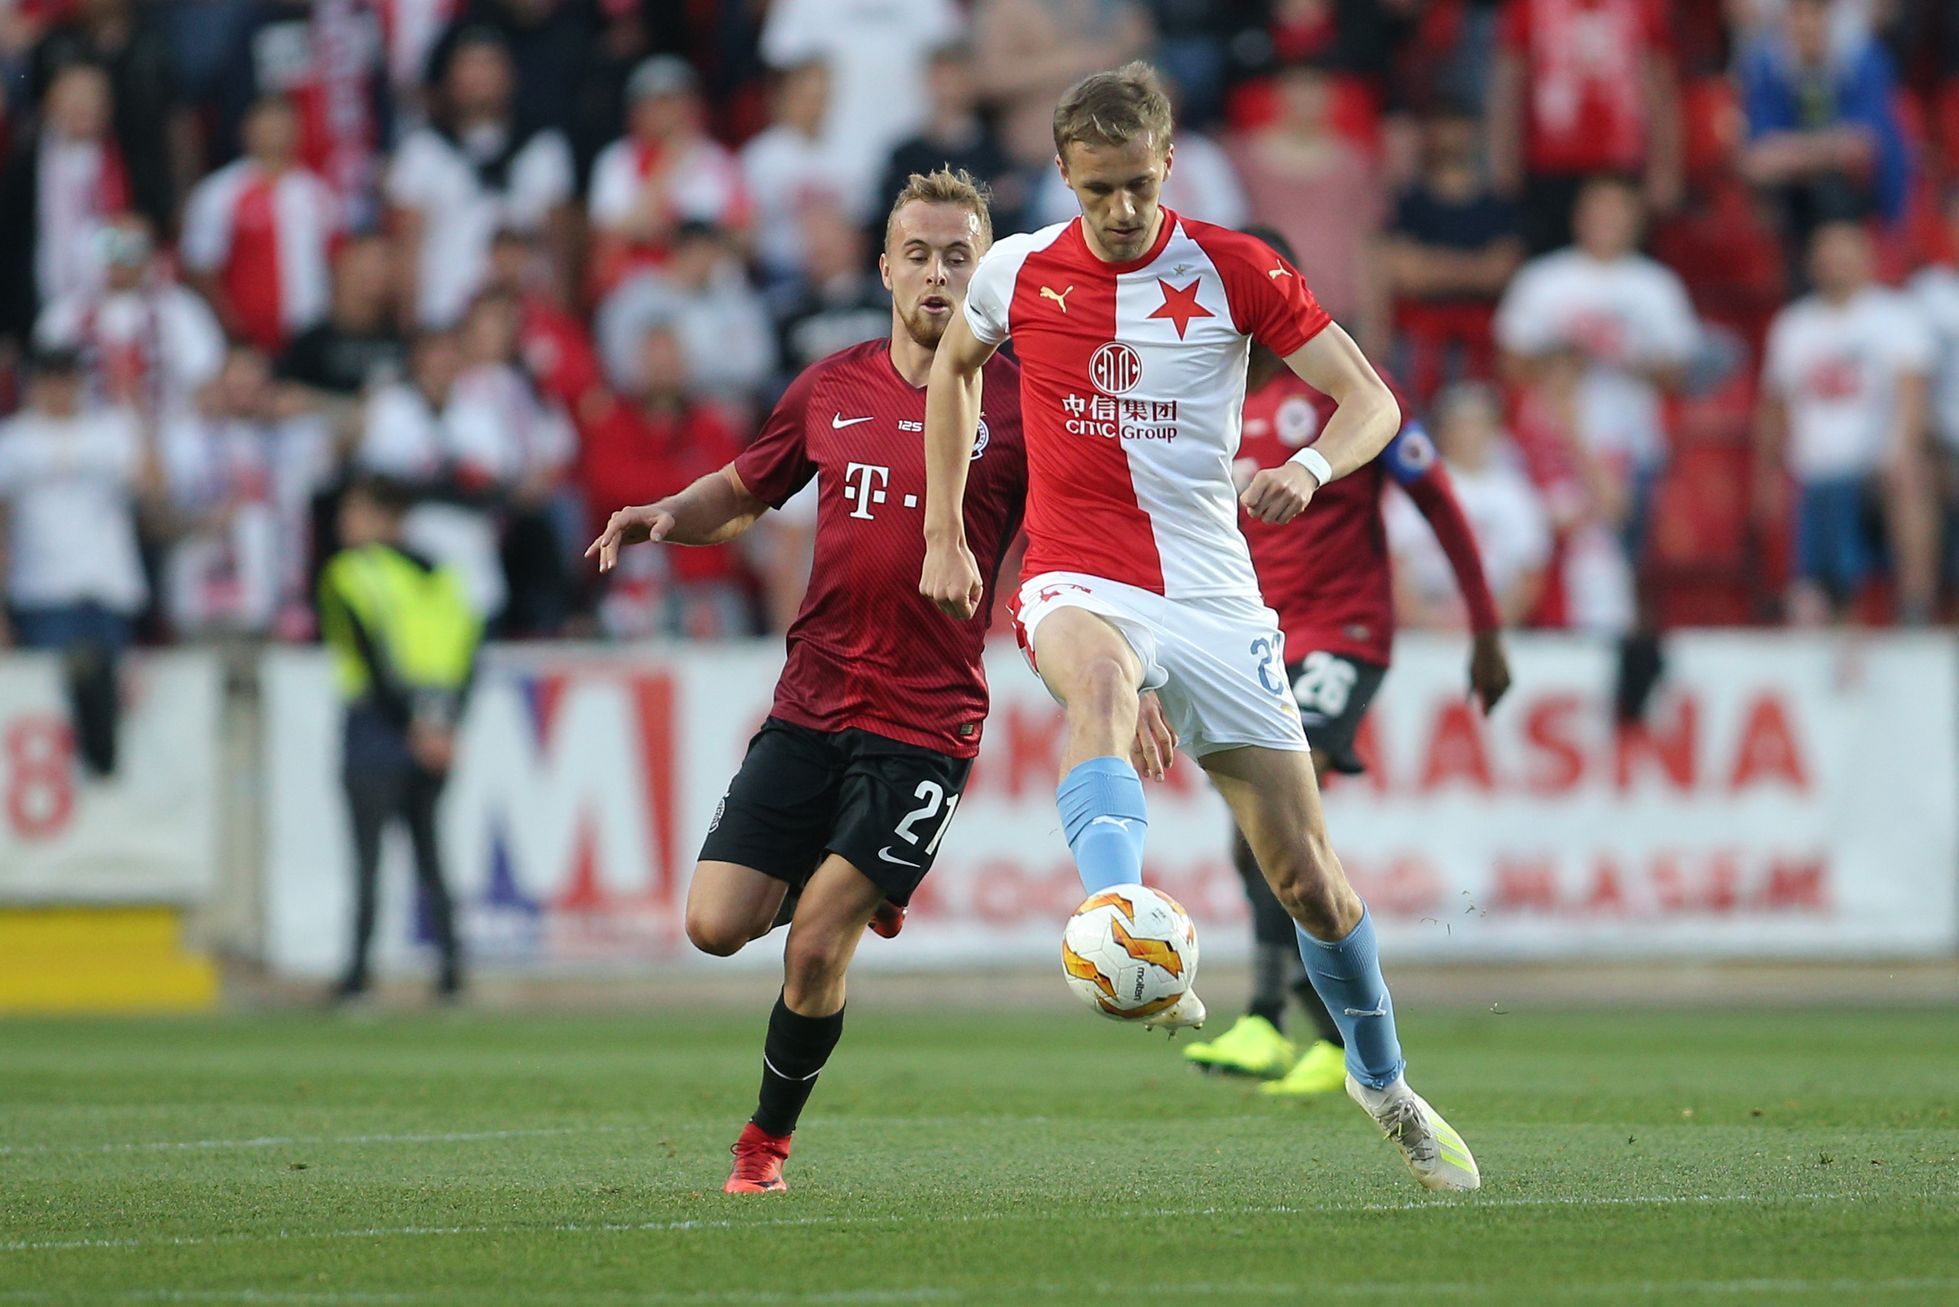 Semifinále MOL Cupu 2018/19, Slavia - Sparta: Tomáš Souček (u míče) a Martin Hašek